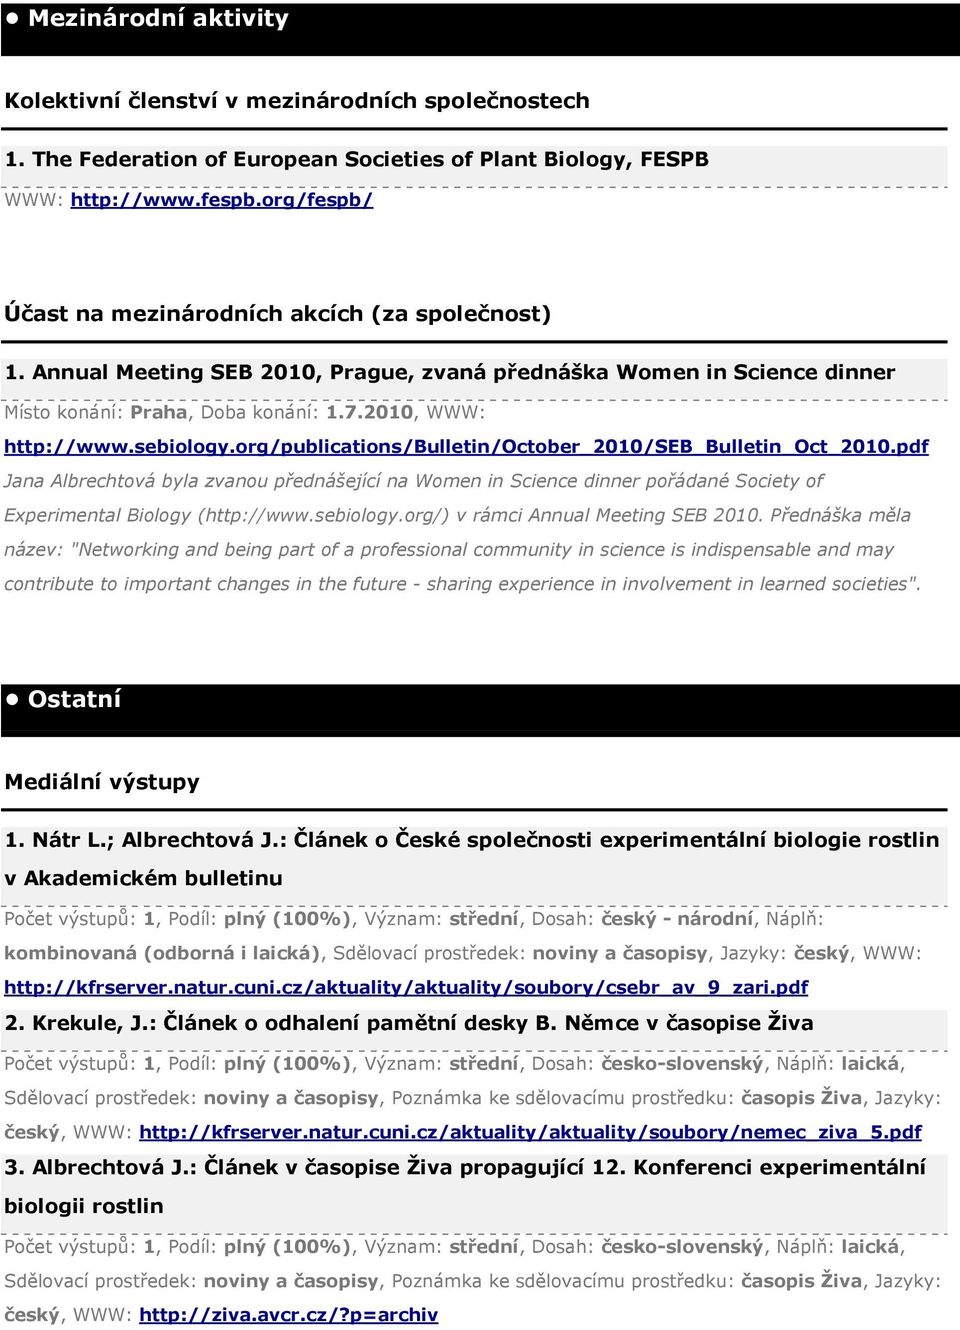 sebiology.org/publications/bulletin/october_2010/seb_bulletin_oct_2010.pdf Jana Albrechtová byla zvanou přednášející na Women in Science dinner pořádané Society of Experimental Biology (http://www.